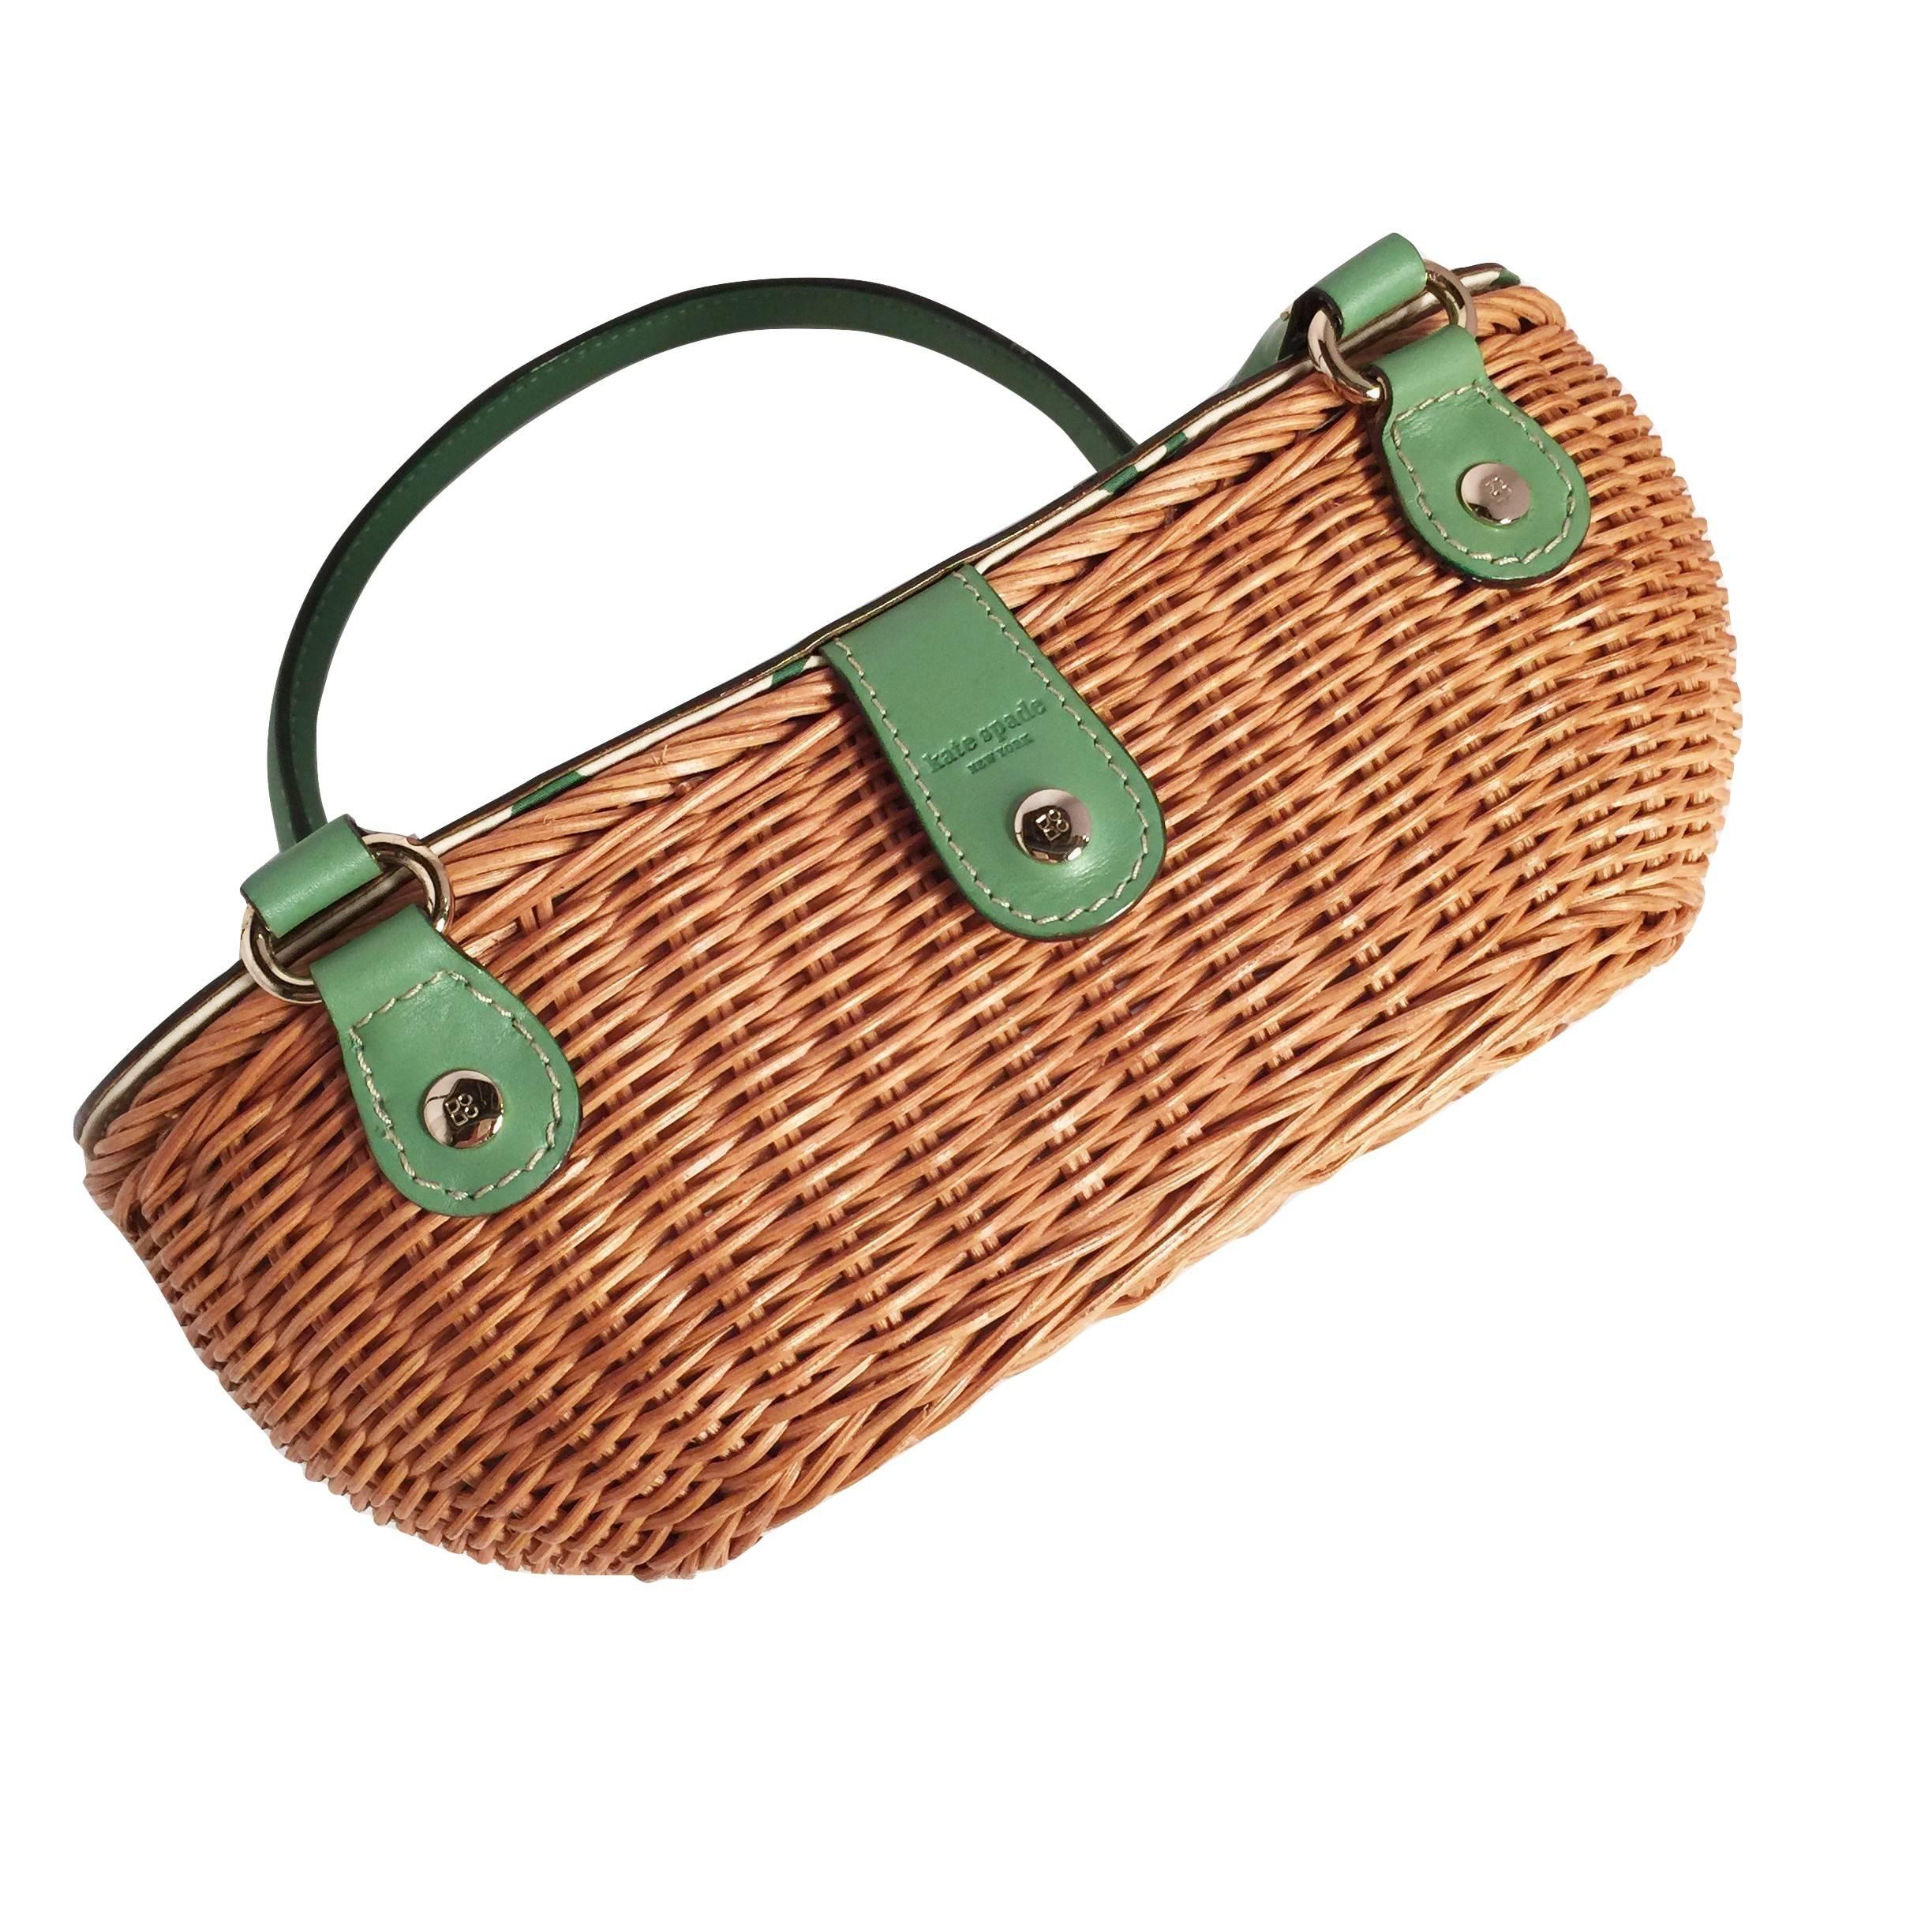 Women's New Kate Spade Rare Collectible Spring 2005 Green Wicker Basket Bag 